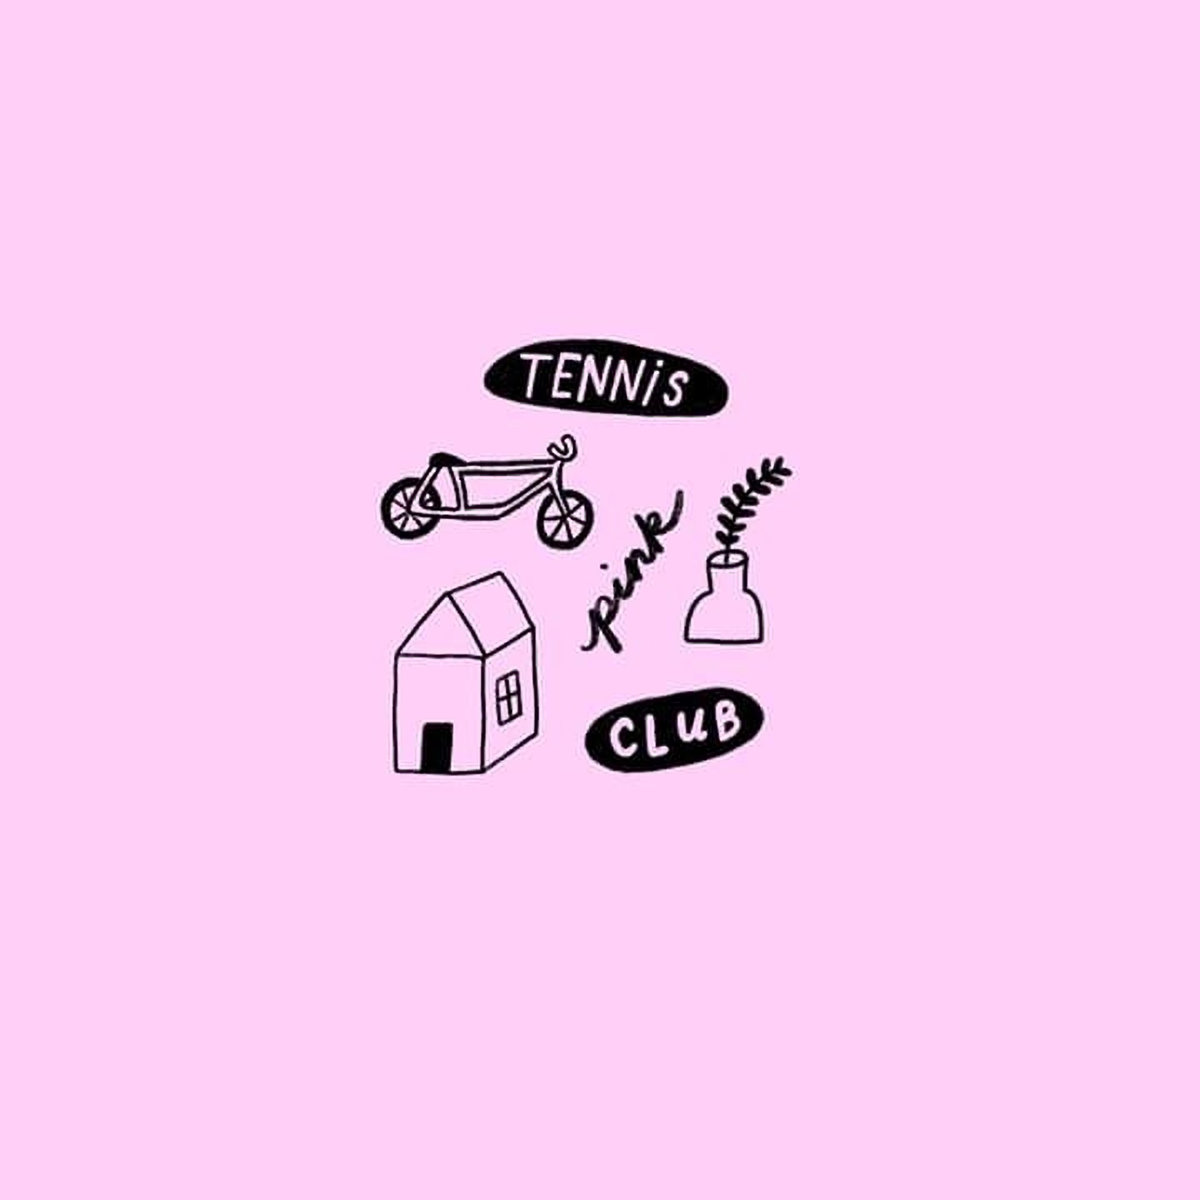 tennis club pink album cover